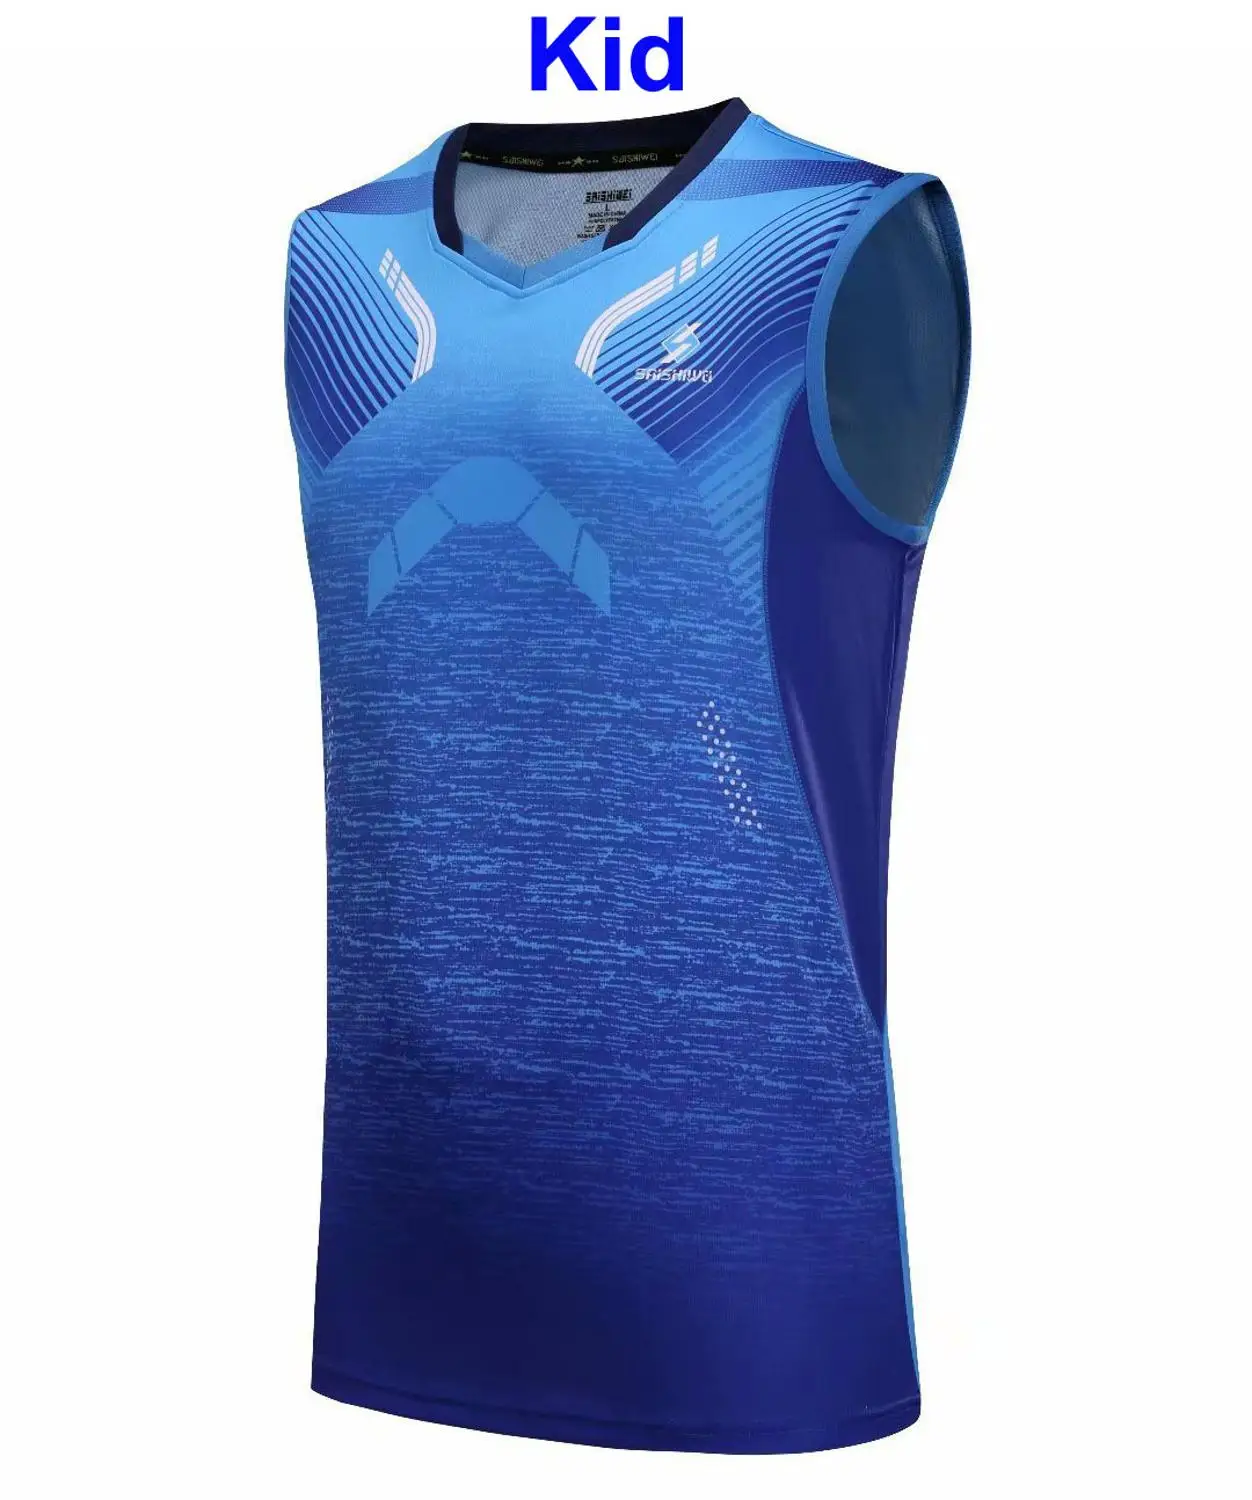 Рубашки для бадминтона без рукавов для мужчин, женщин и детей теннисные рубашки спортивный костюм для бадминтона для мальчиков комплект для настольного тенниса спортивный костюм 3889 - Цвет: Kid Blue Shirt